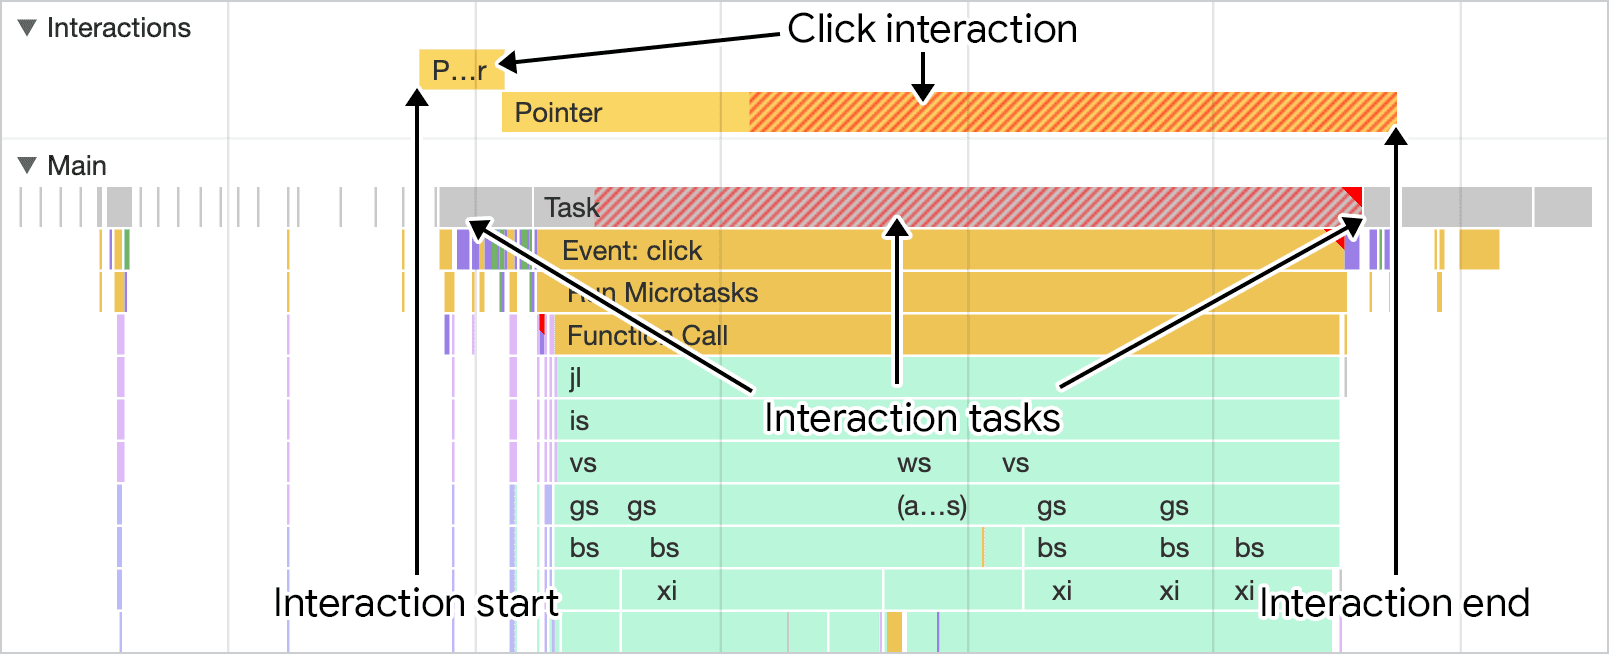 Скриншот взаимодействия, отображаемый на панели производительности Chrome DevTools. Дорожка взаимодействий над дорожкой основного потока показывает продолжительность взаимодействия, которую можно сопоставить с активностью основного потока.